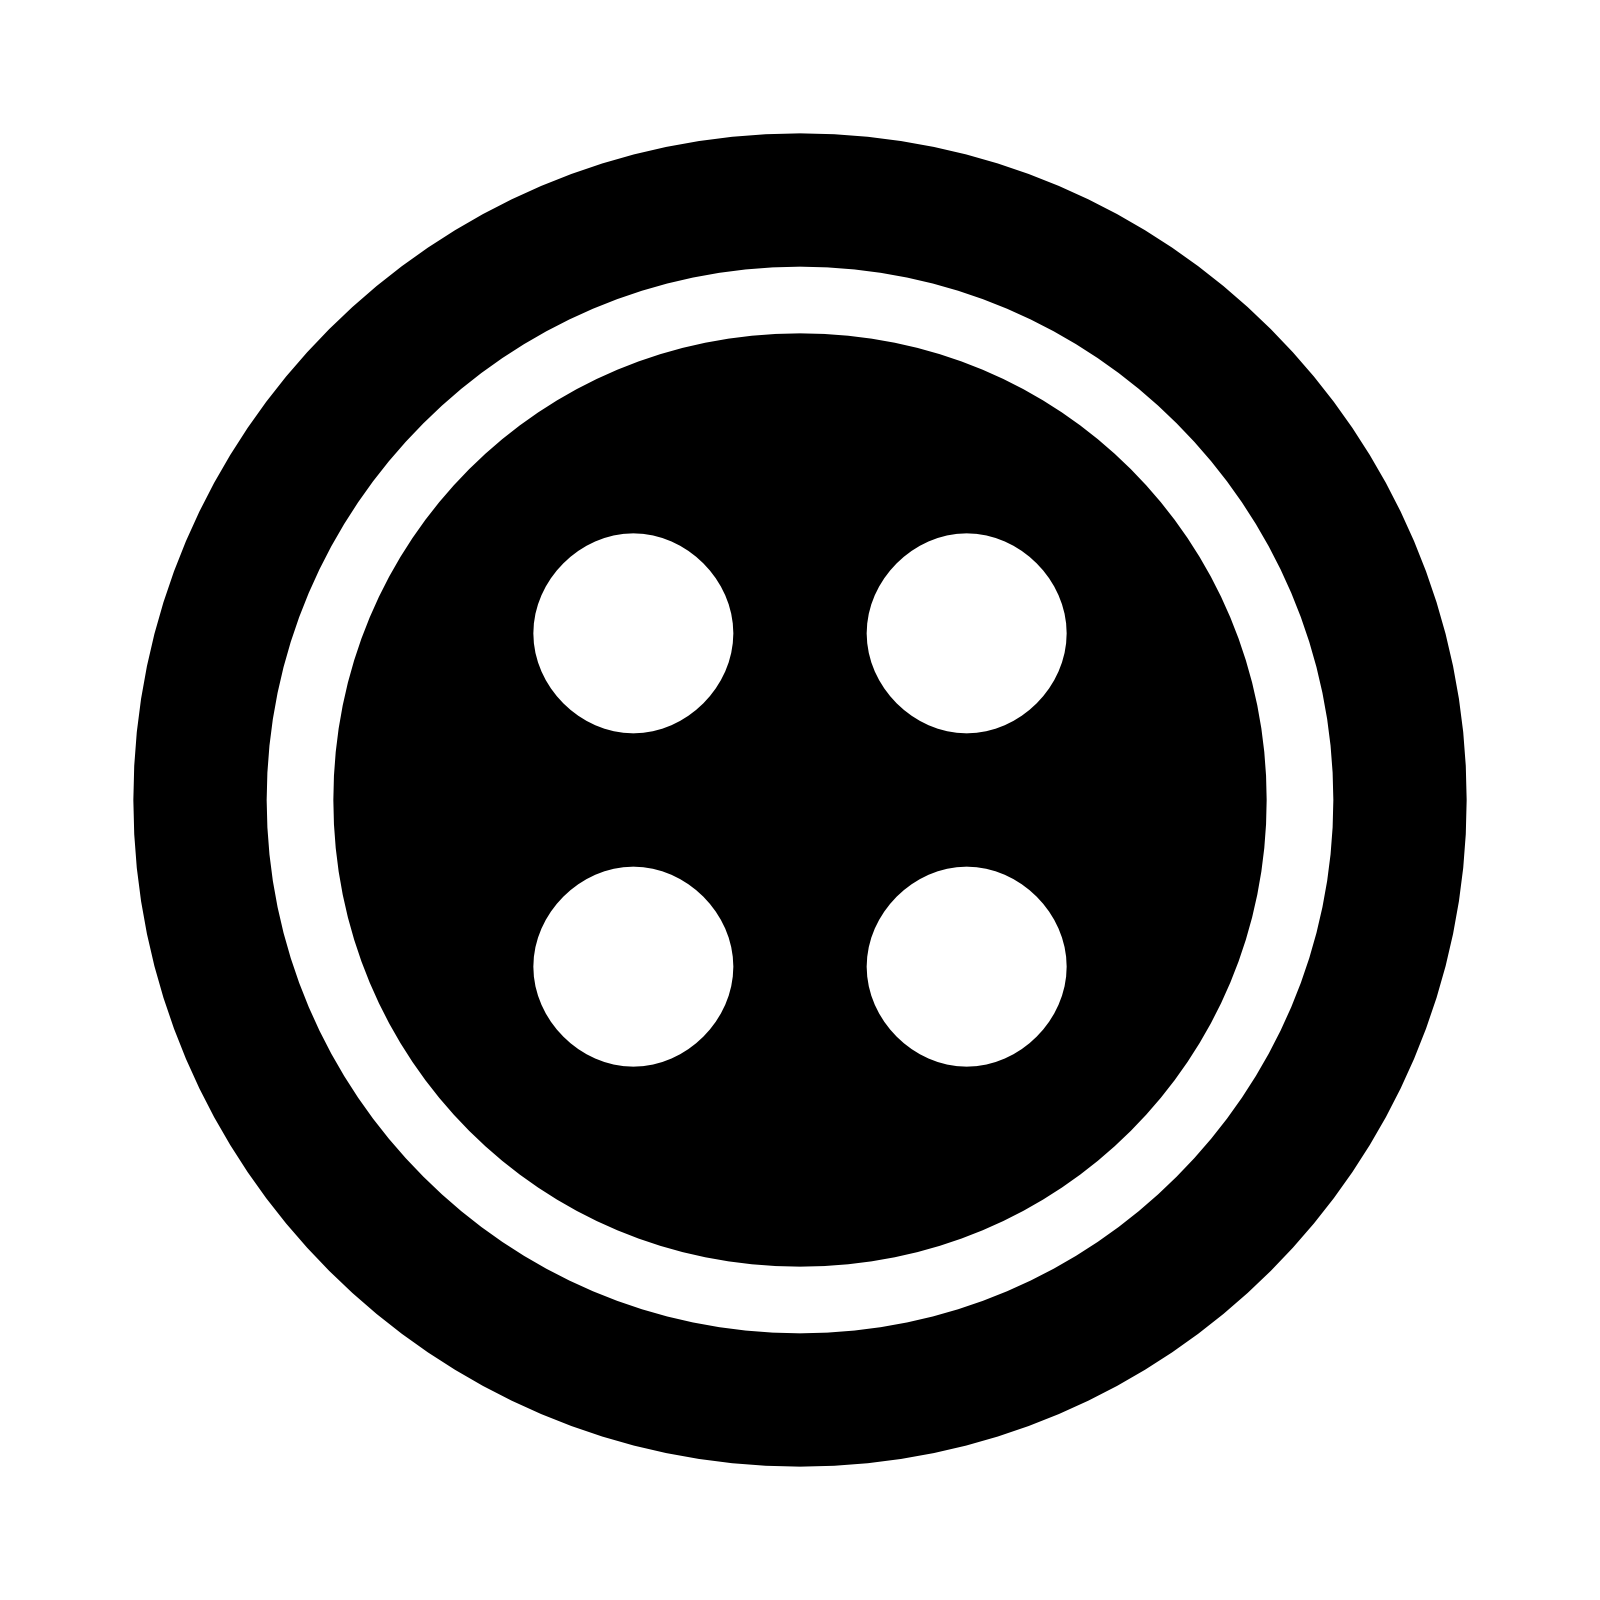 Emoticon,Circle,Smile,Symbol,Icon,Logo,Clip art